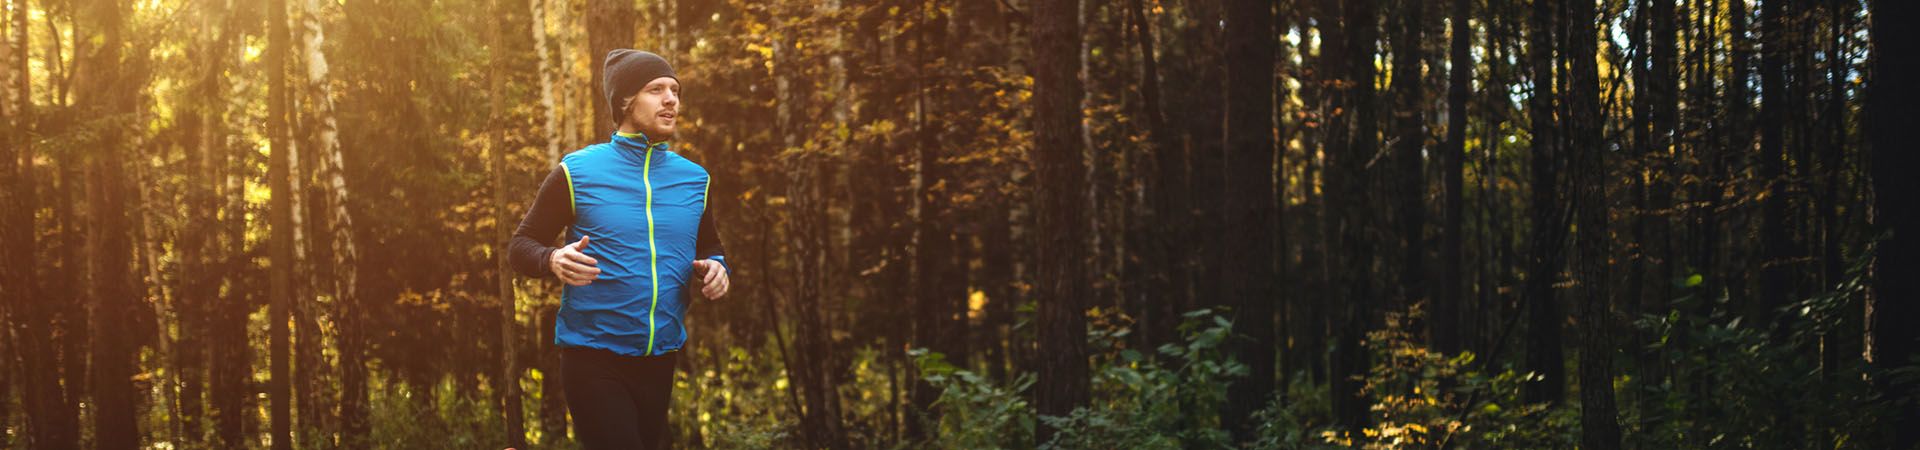 Hardlopen in de herfst: man jogt op een bospad.